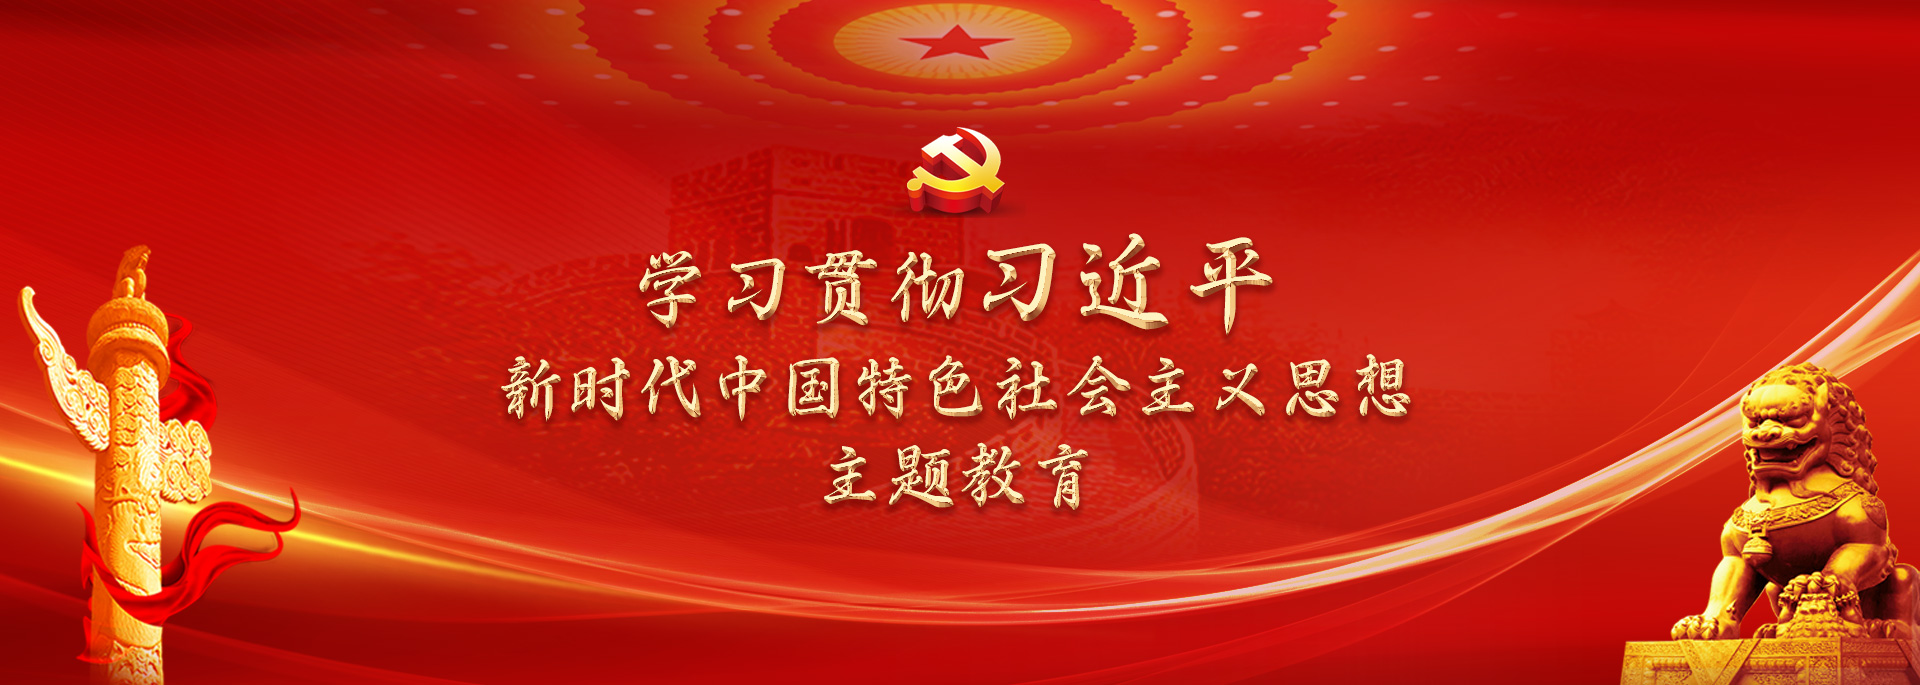 学习贯彻习近平新时代中国特色社会主义思想教育主题